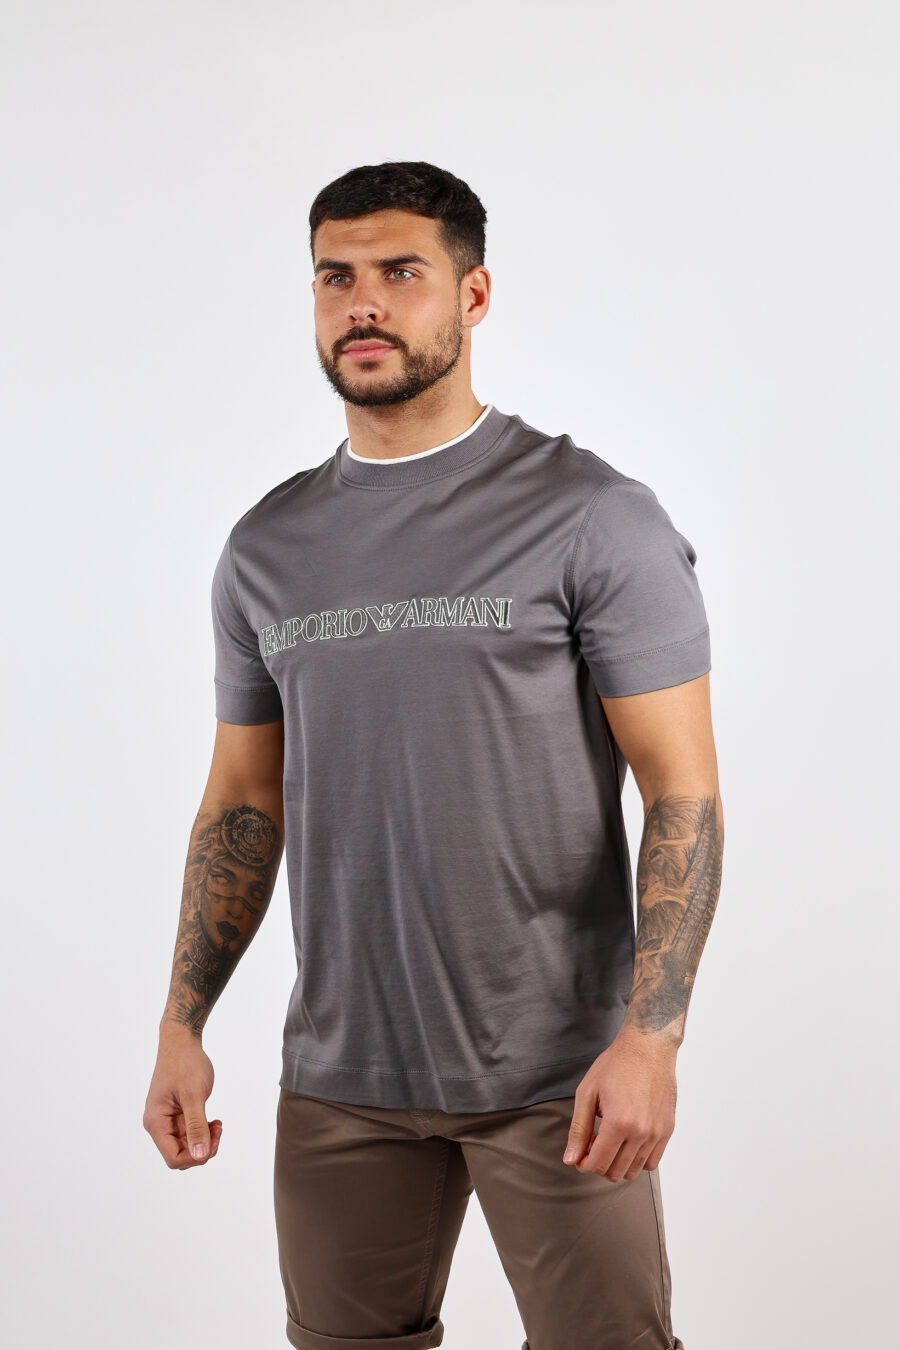 T-shirt cinzenta com maxilogo "emporio" - BLS Fashion 67